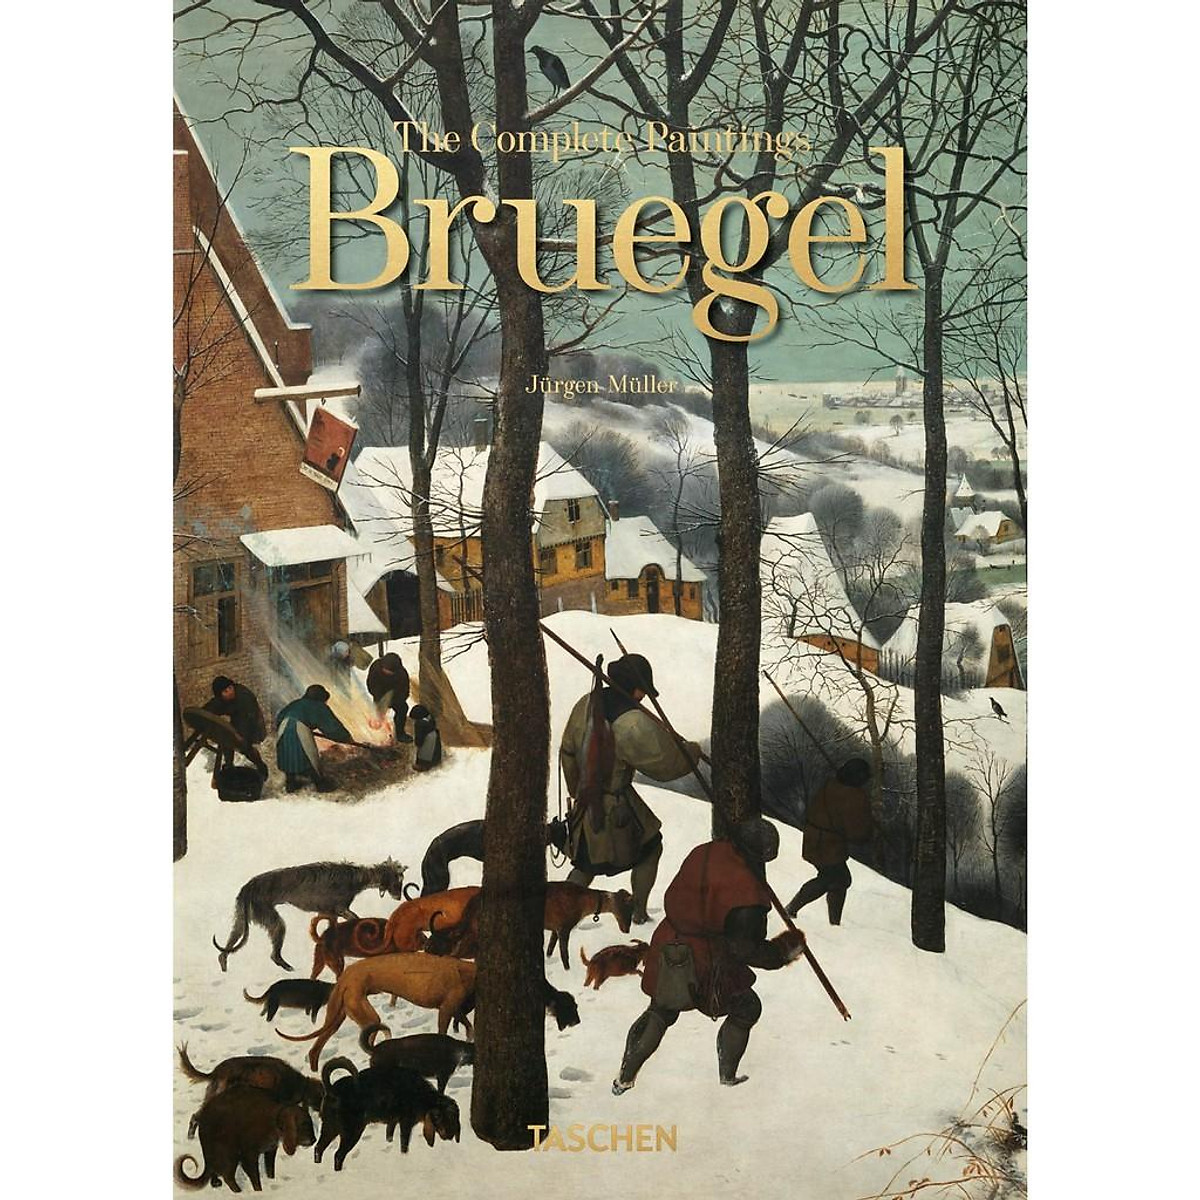 Bruegel: The complete paintings